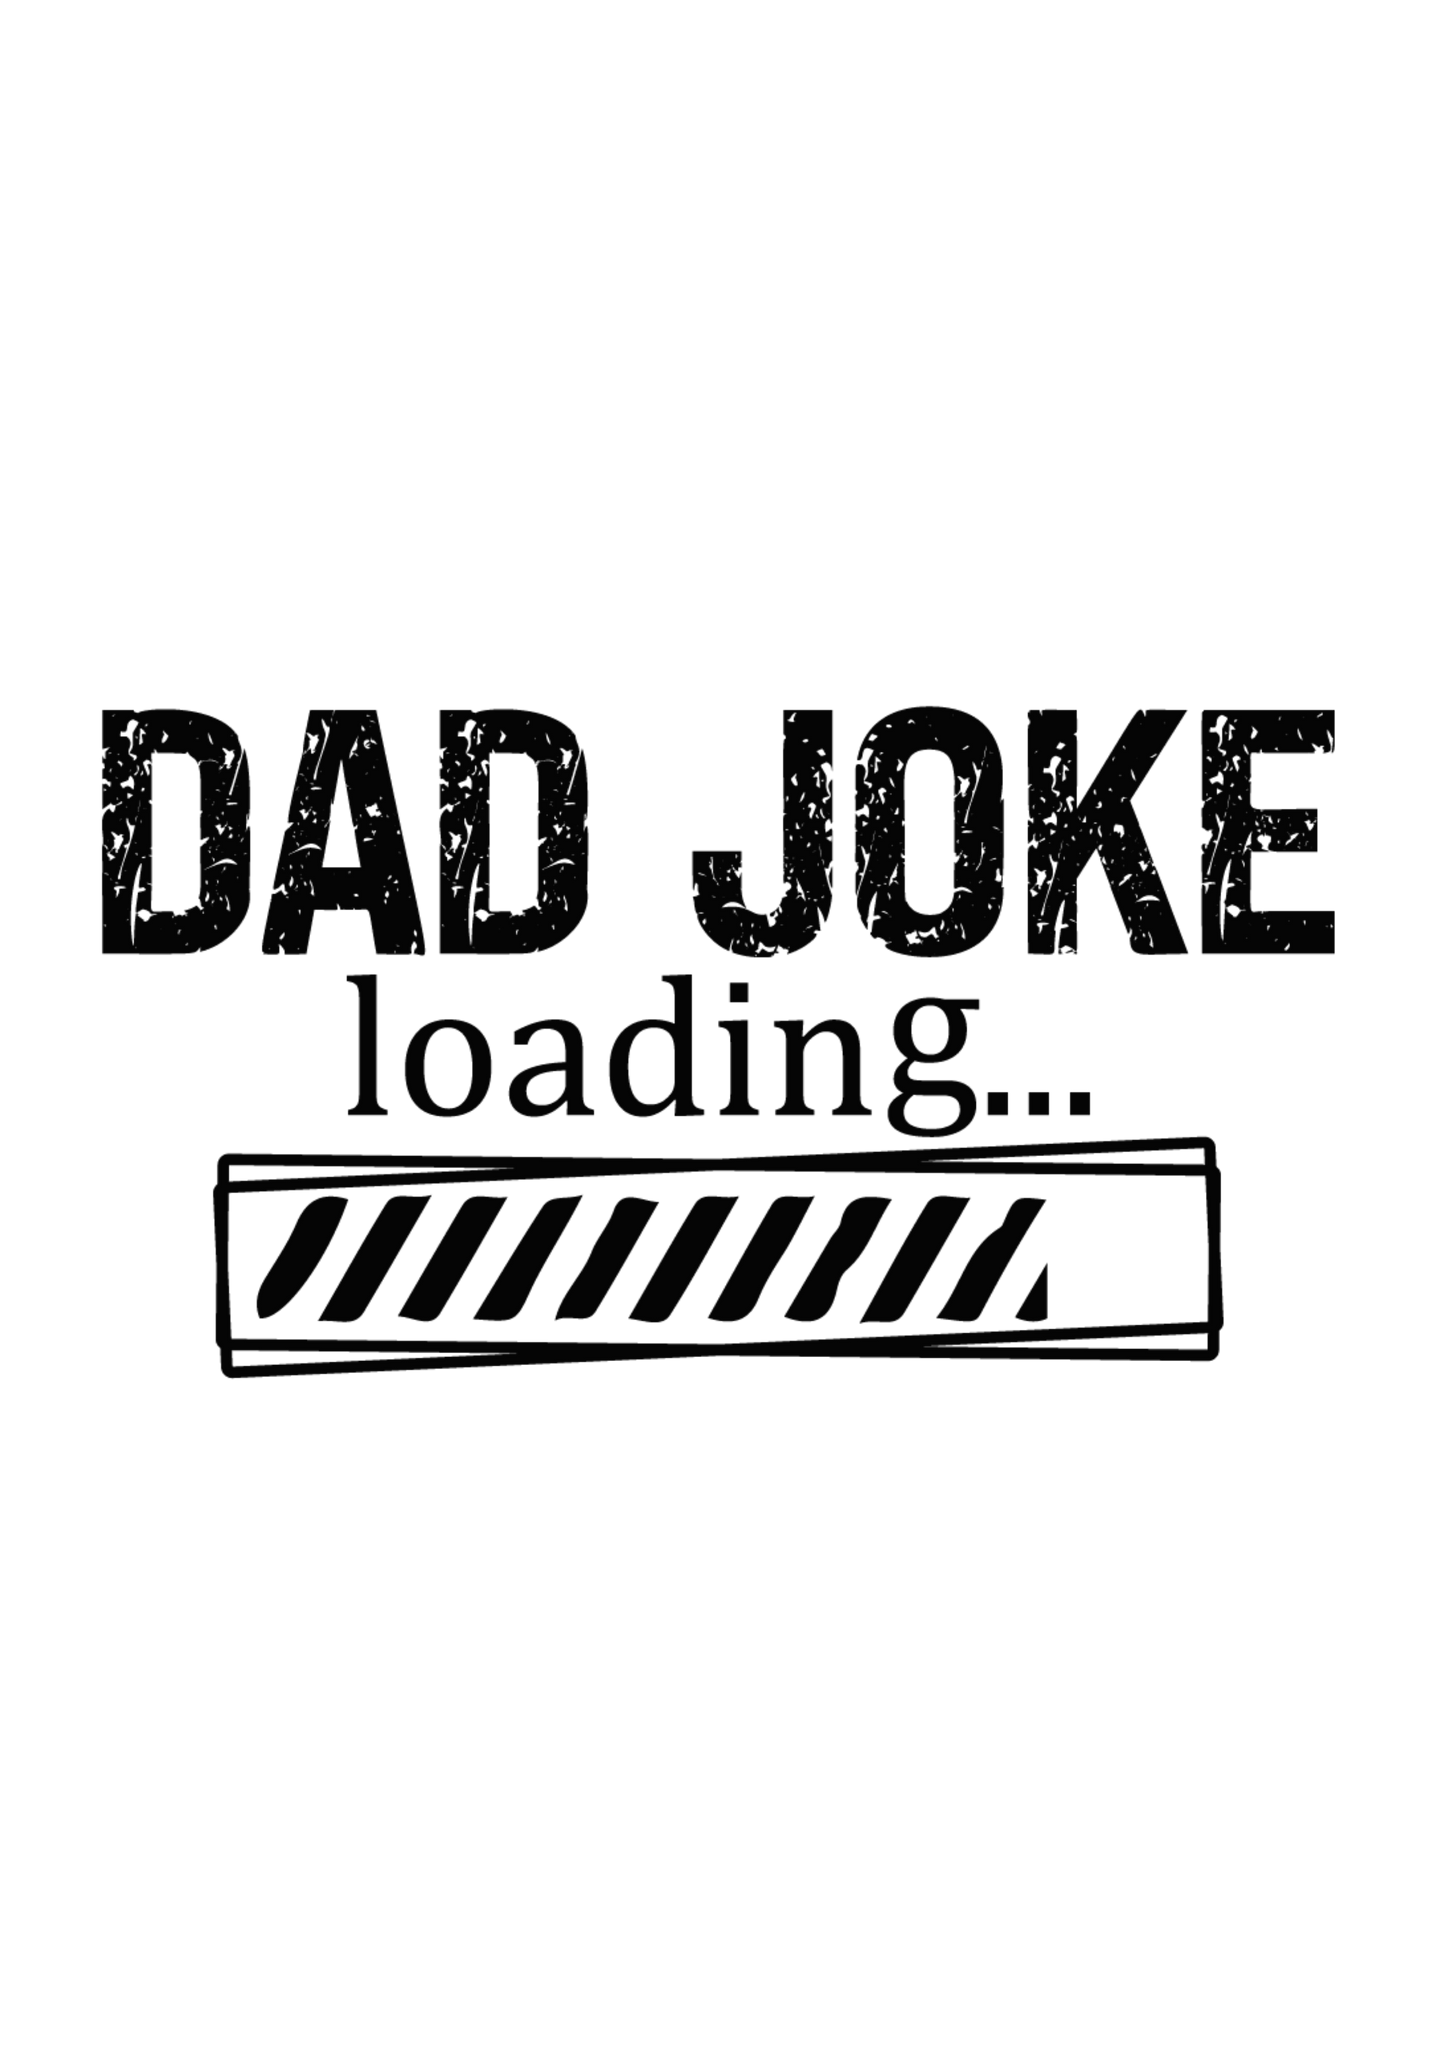 Dad Joke Loading